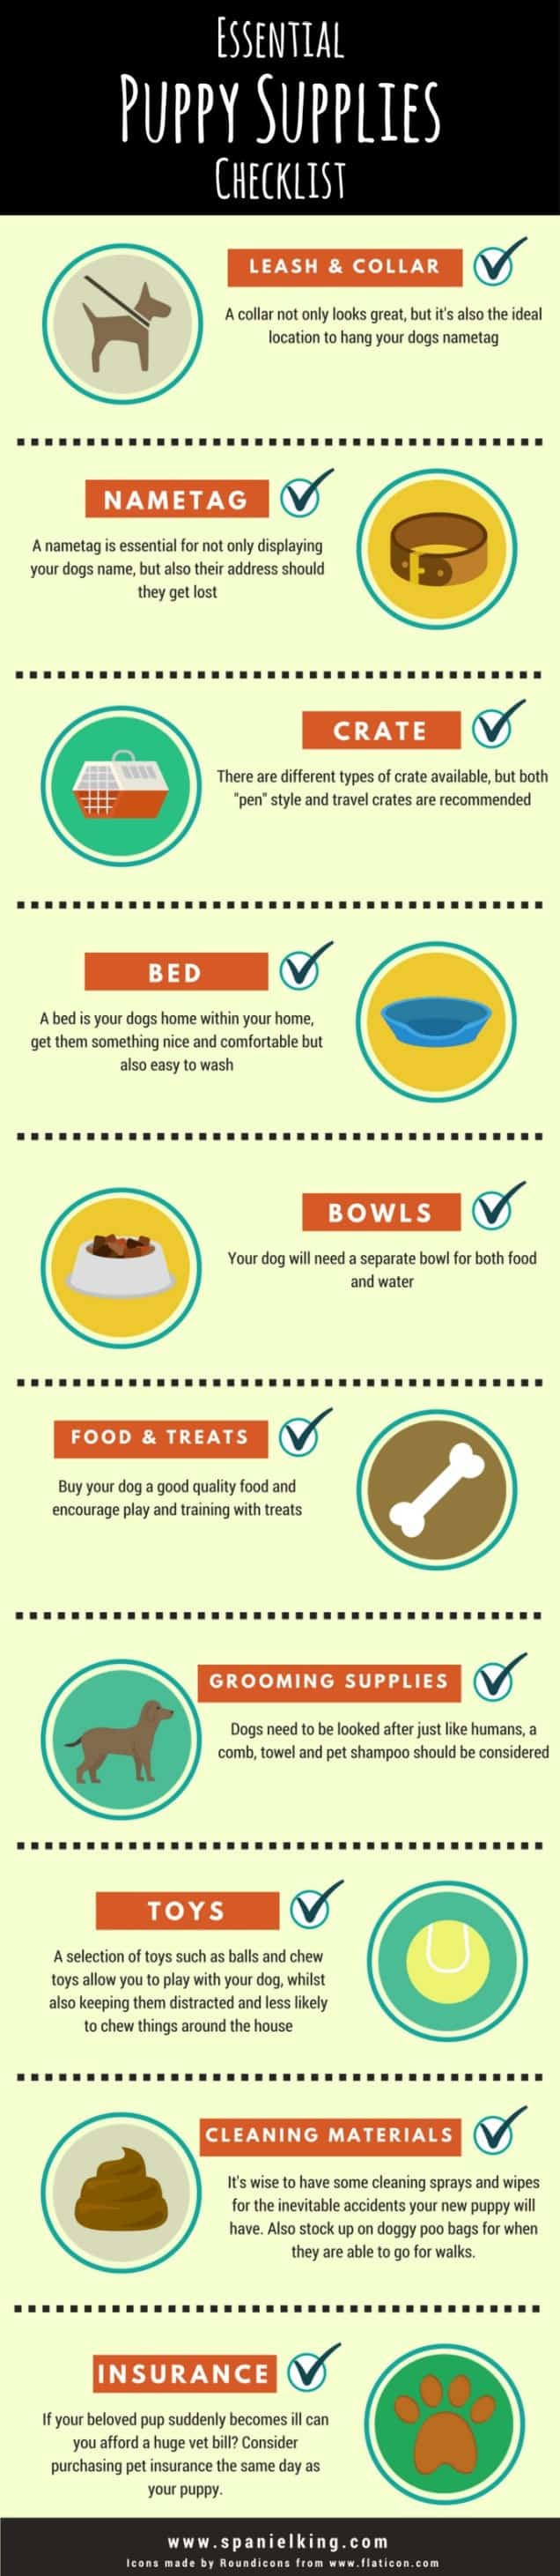 essential-puppy-supplies-checklist-infographic